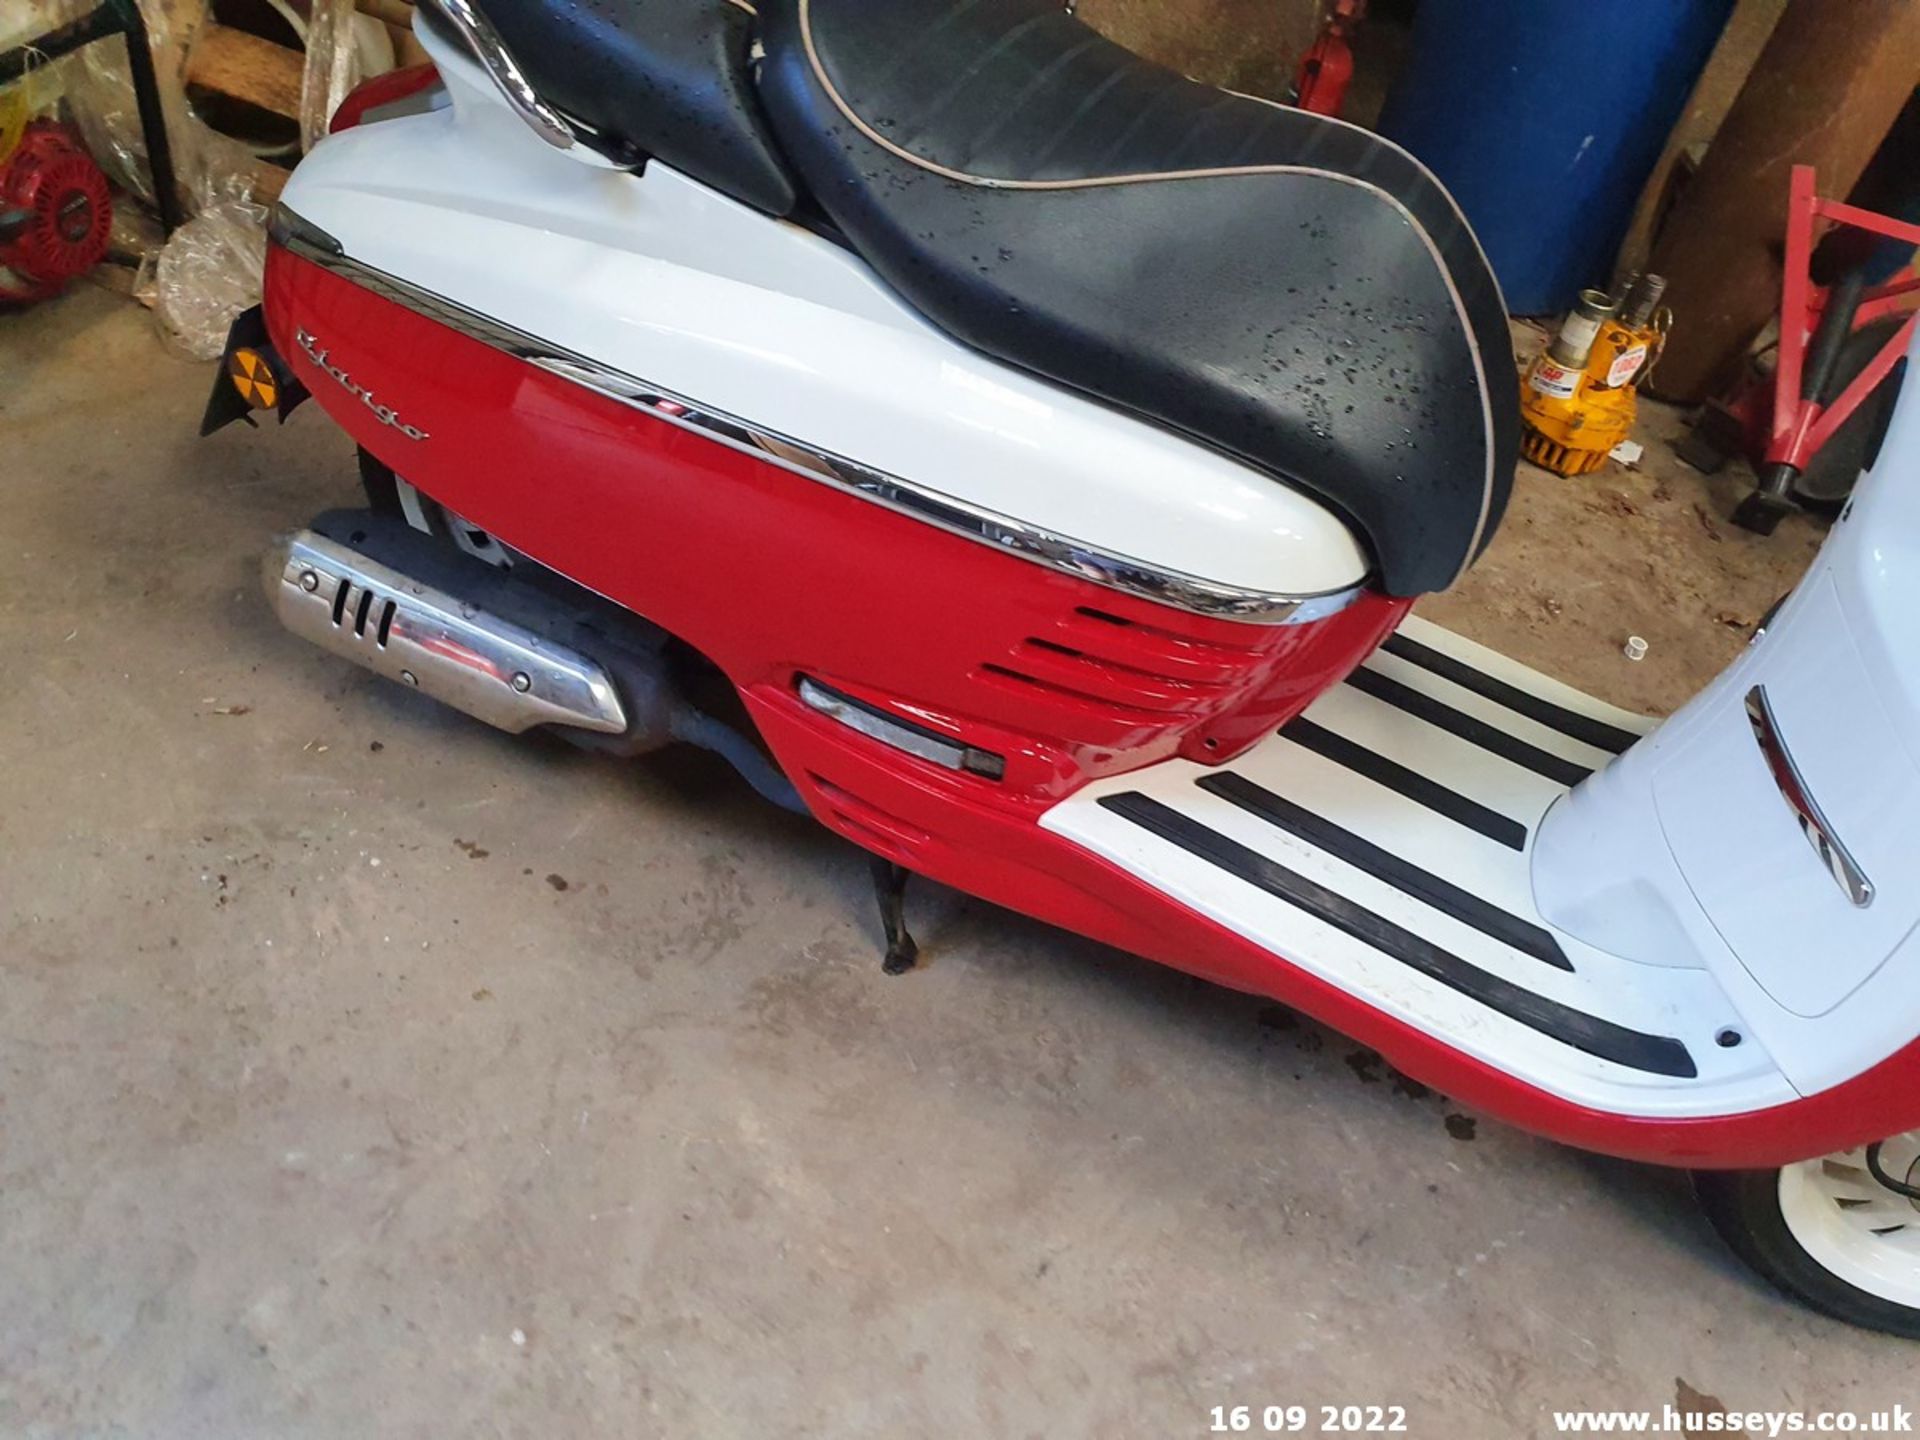 15/15 PEUGEOT DJANGO 125 EVASION - 125cc Motorcycle (Red/white, 13k) - Image 5 of 14